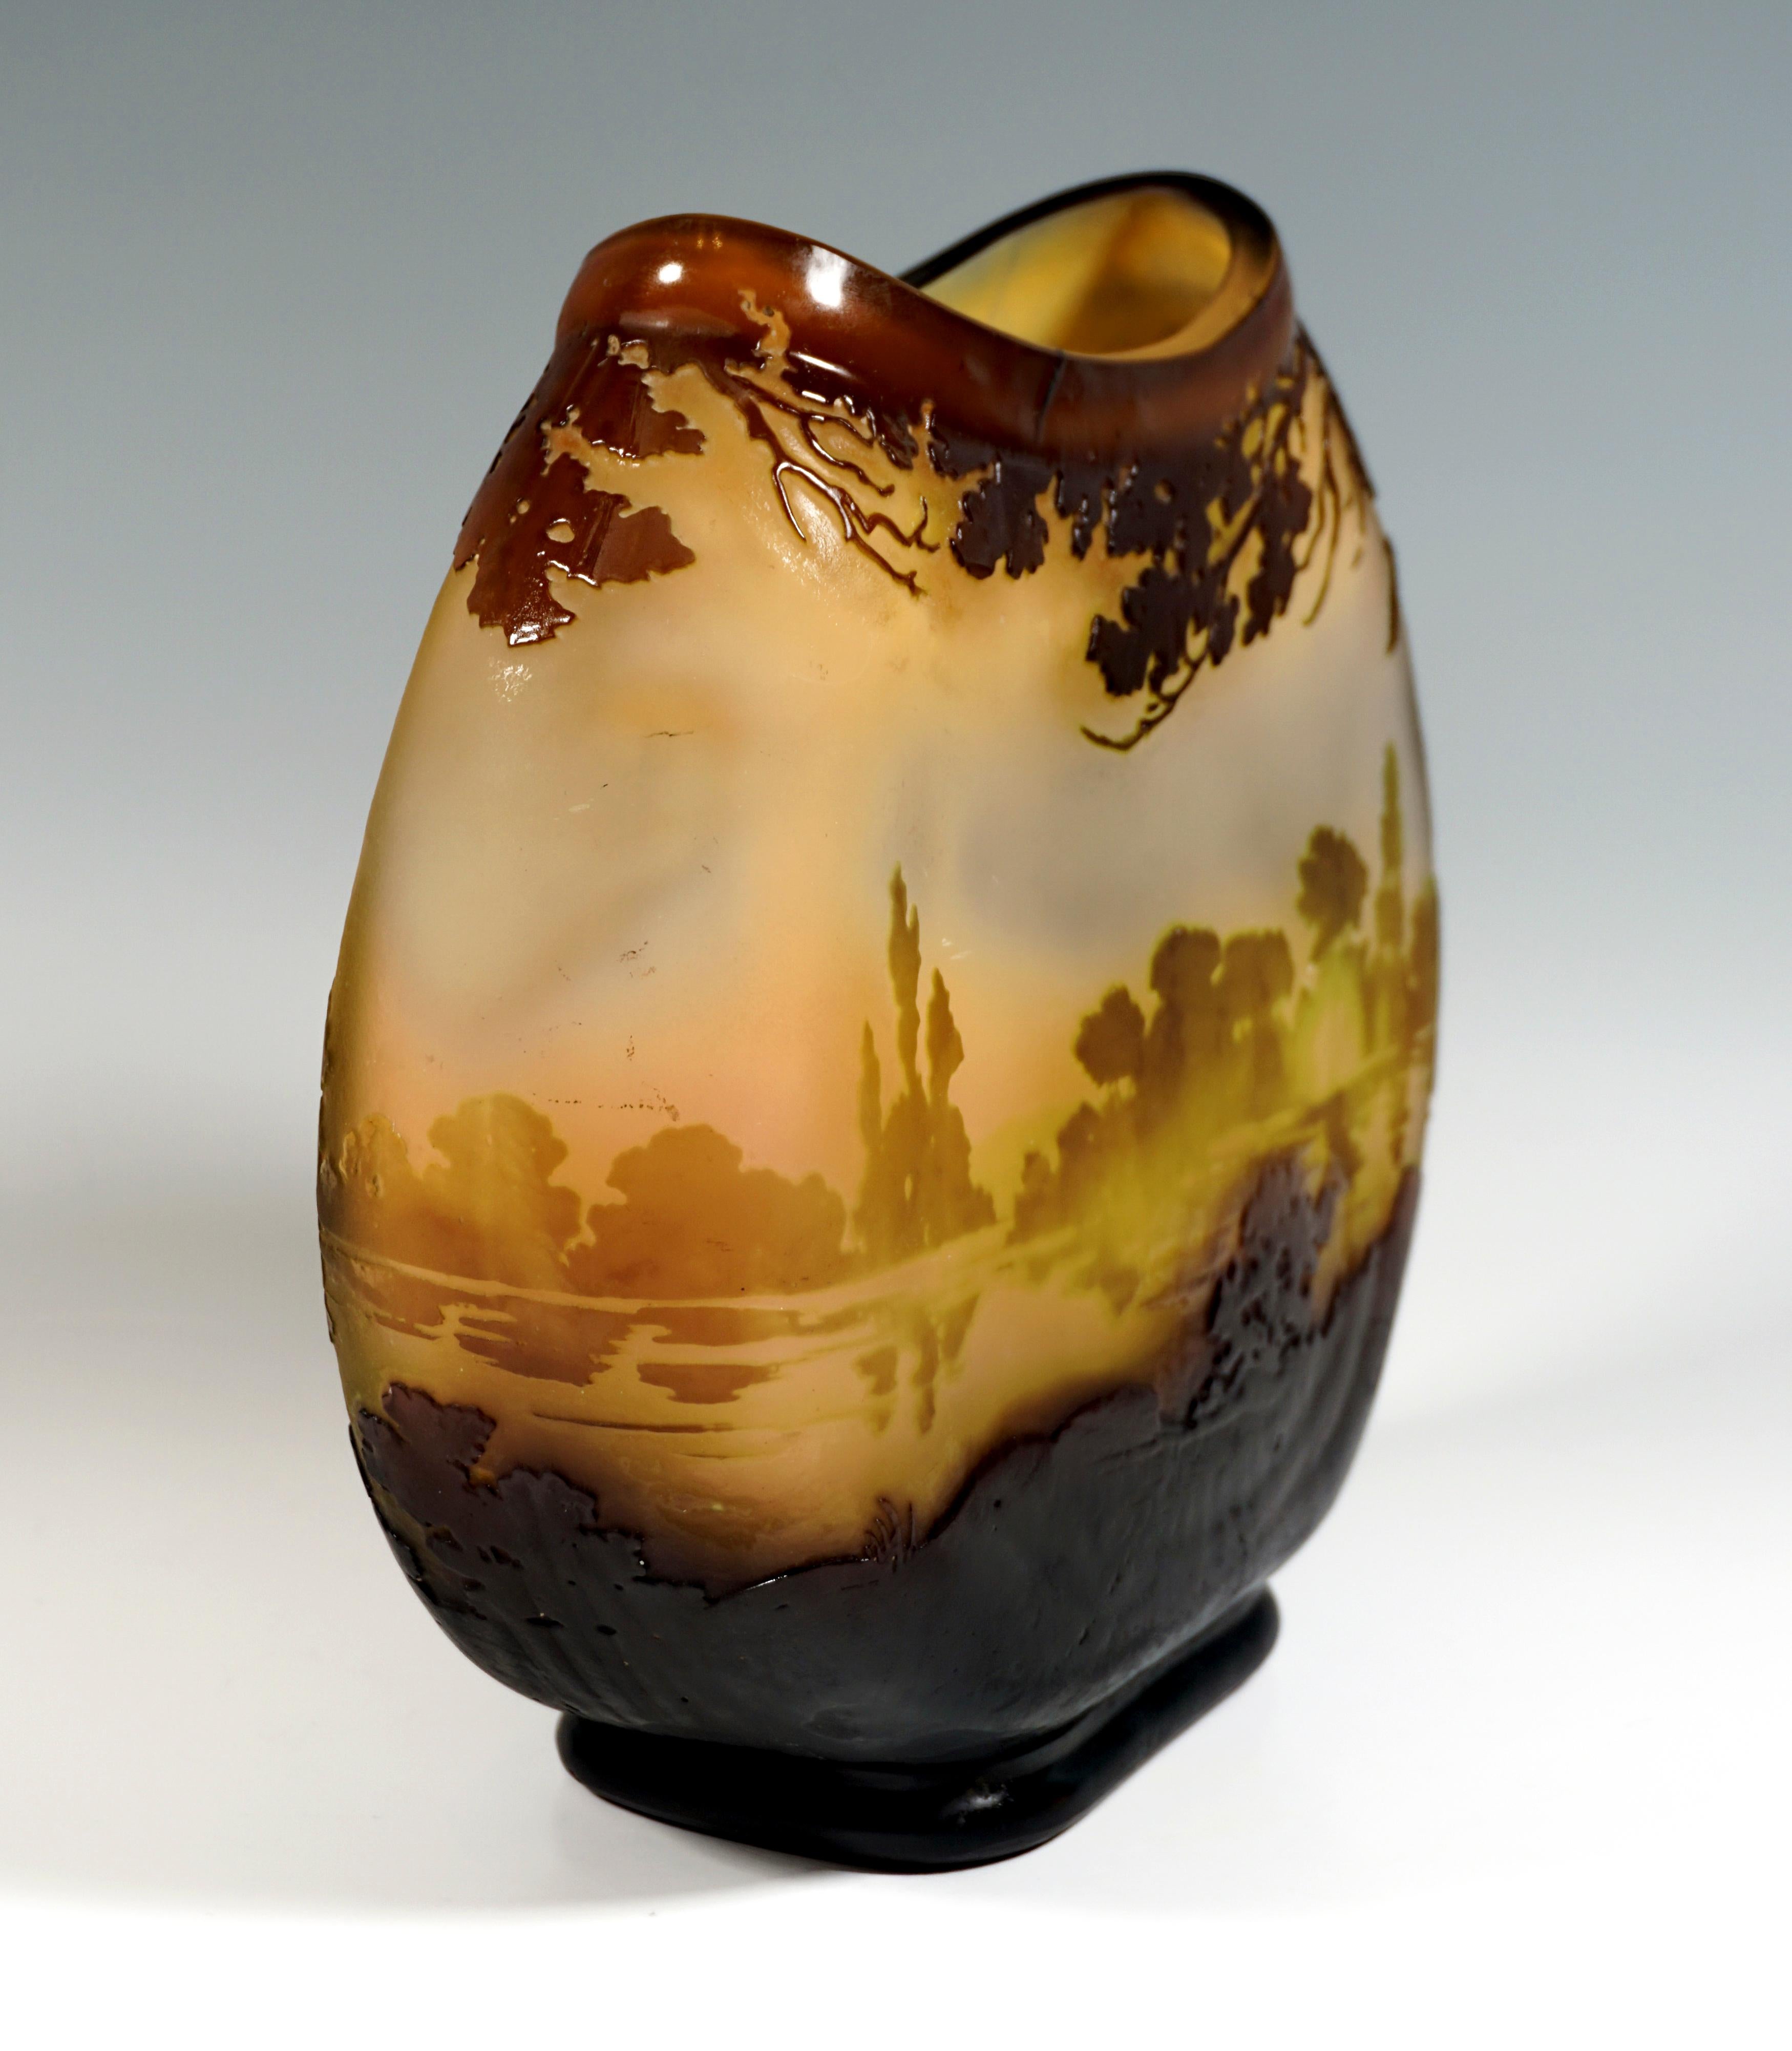 art nouveau vase shapes